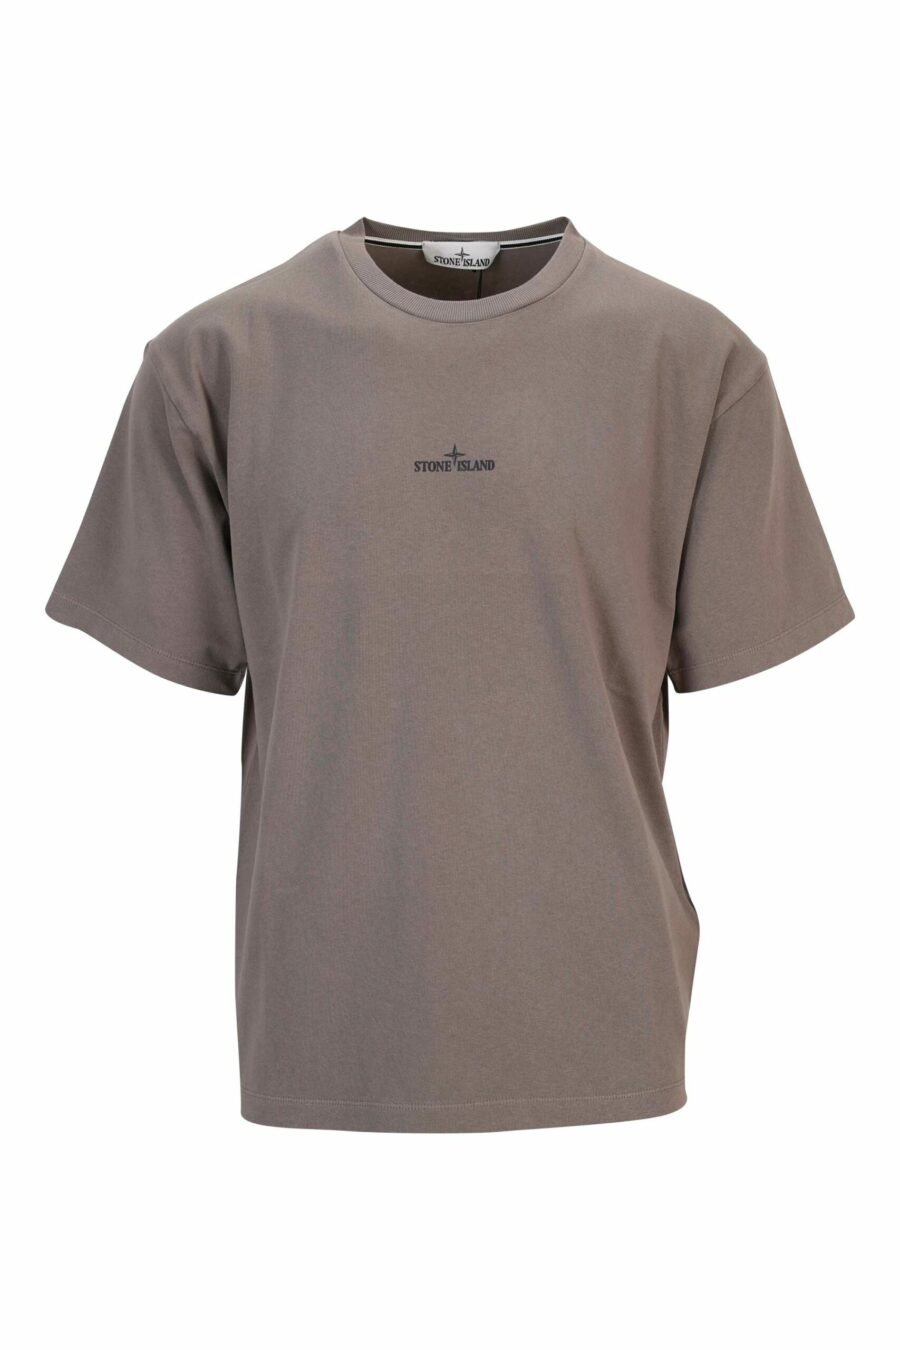 Camiseta gris con logo pequeño negro - 8052572912771 scaled